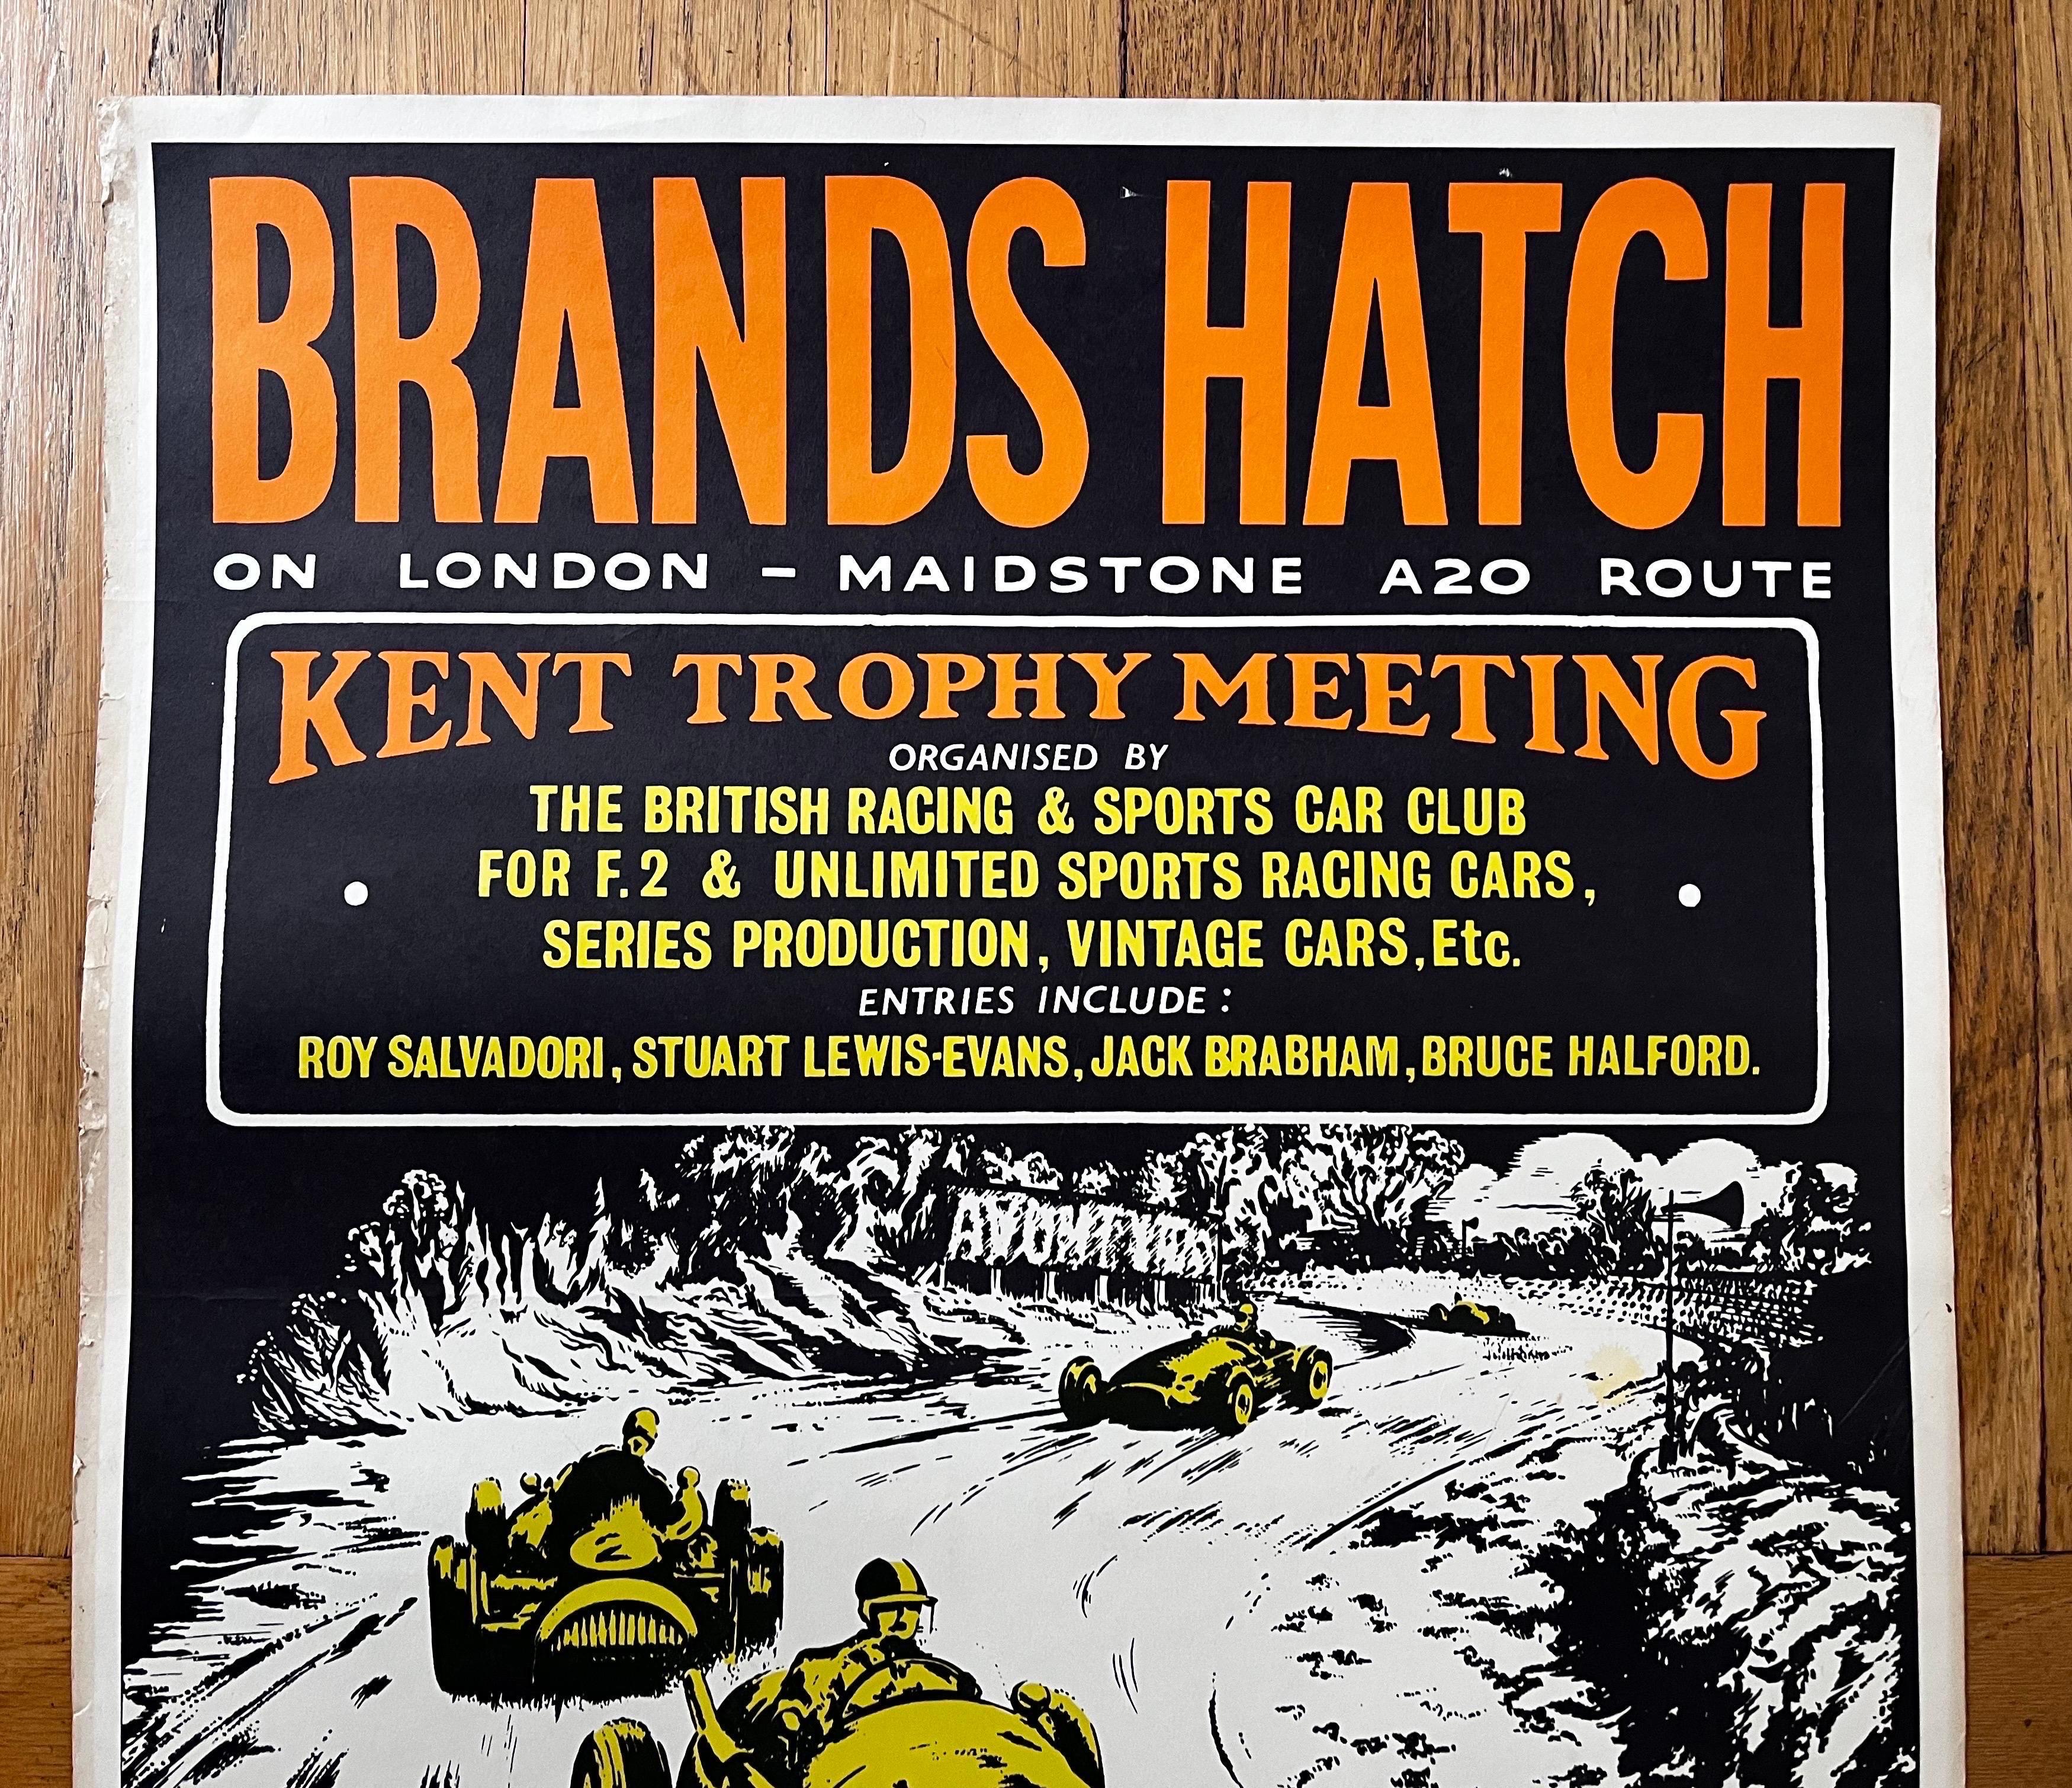 Poster vintage anglais sur les courses automobiles
Brands Hatch Motor Racing c. 1956 

quelques décolorations, rides et plis, etc.

